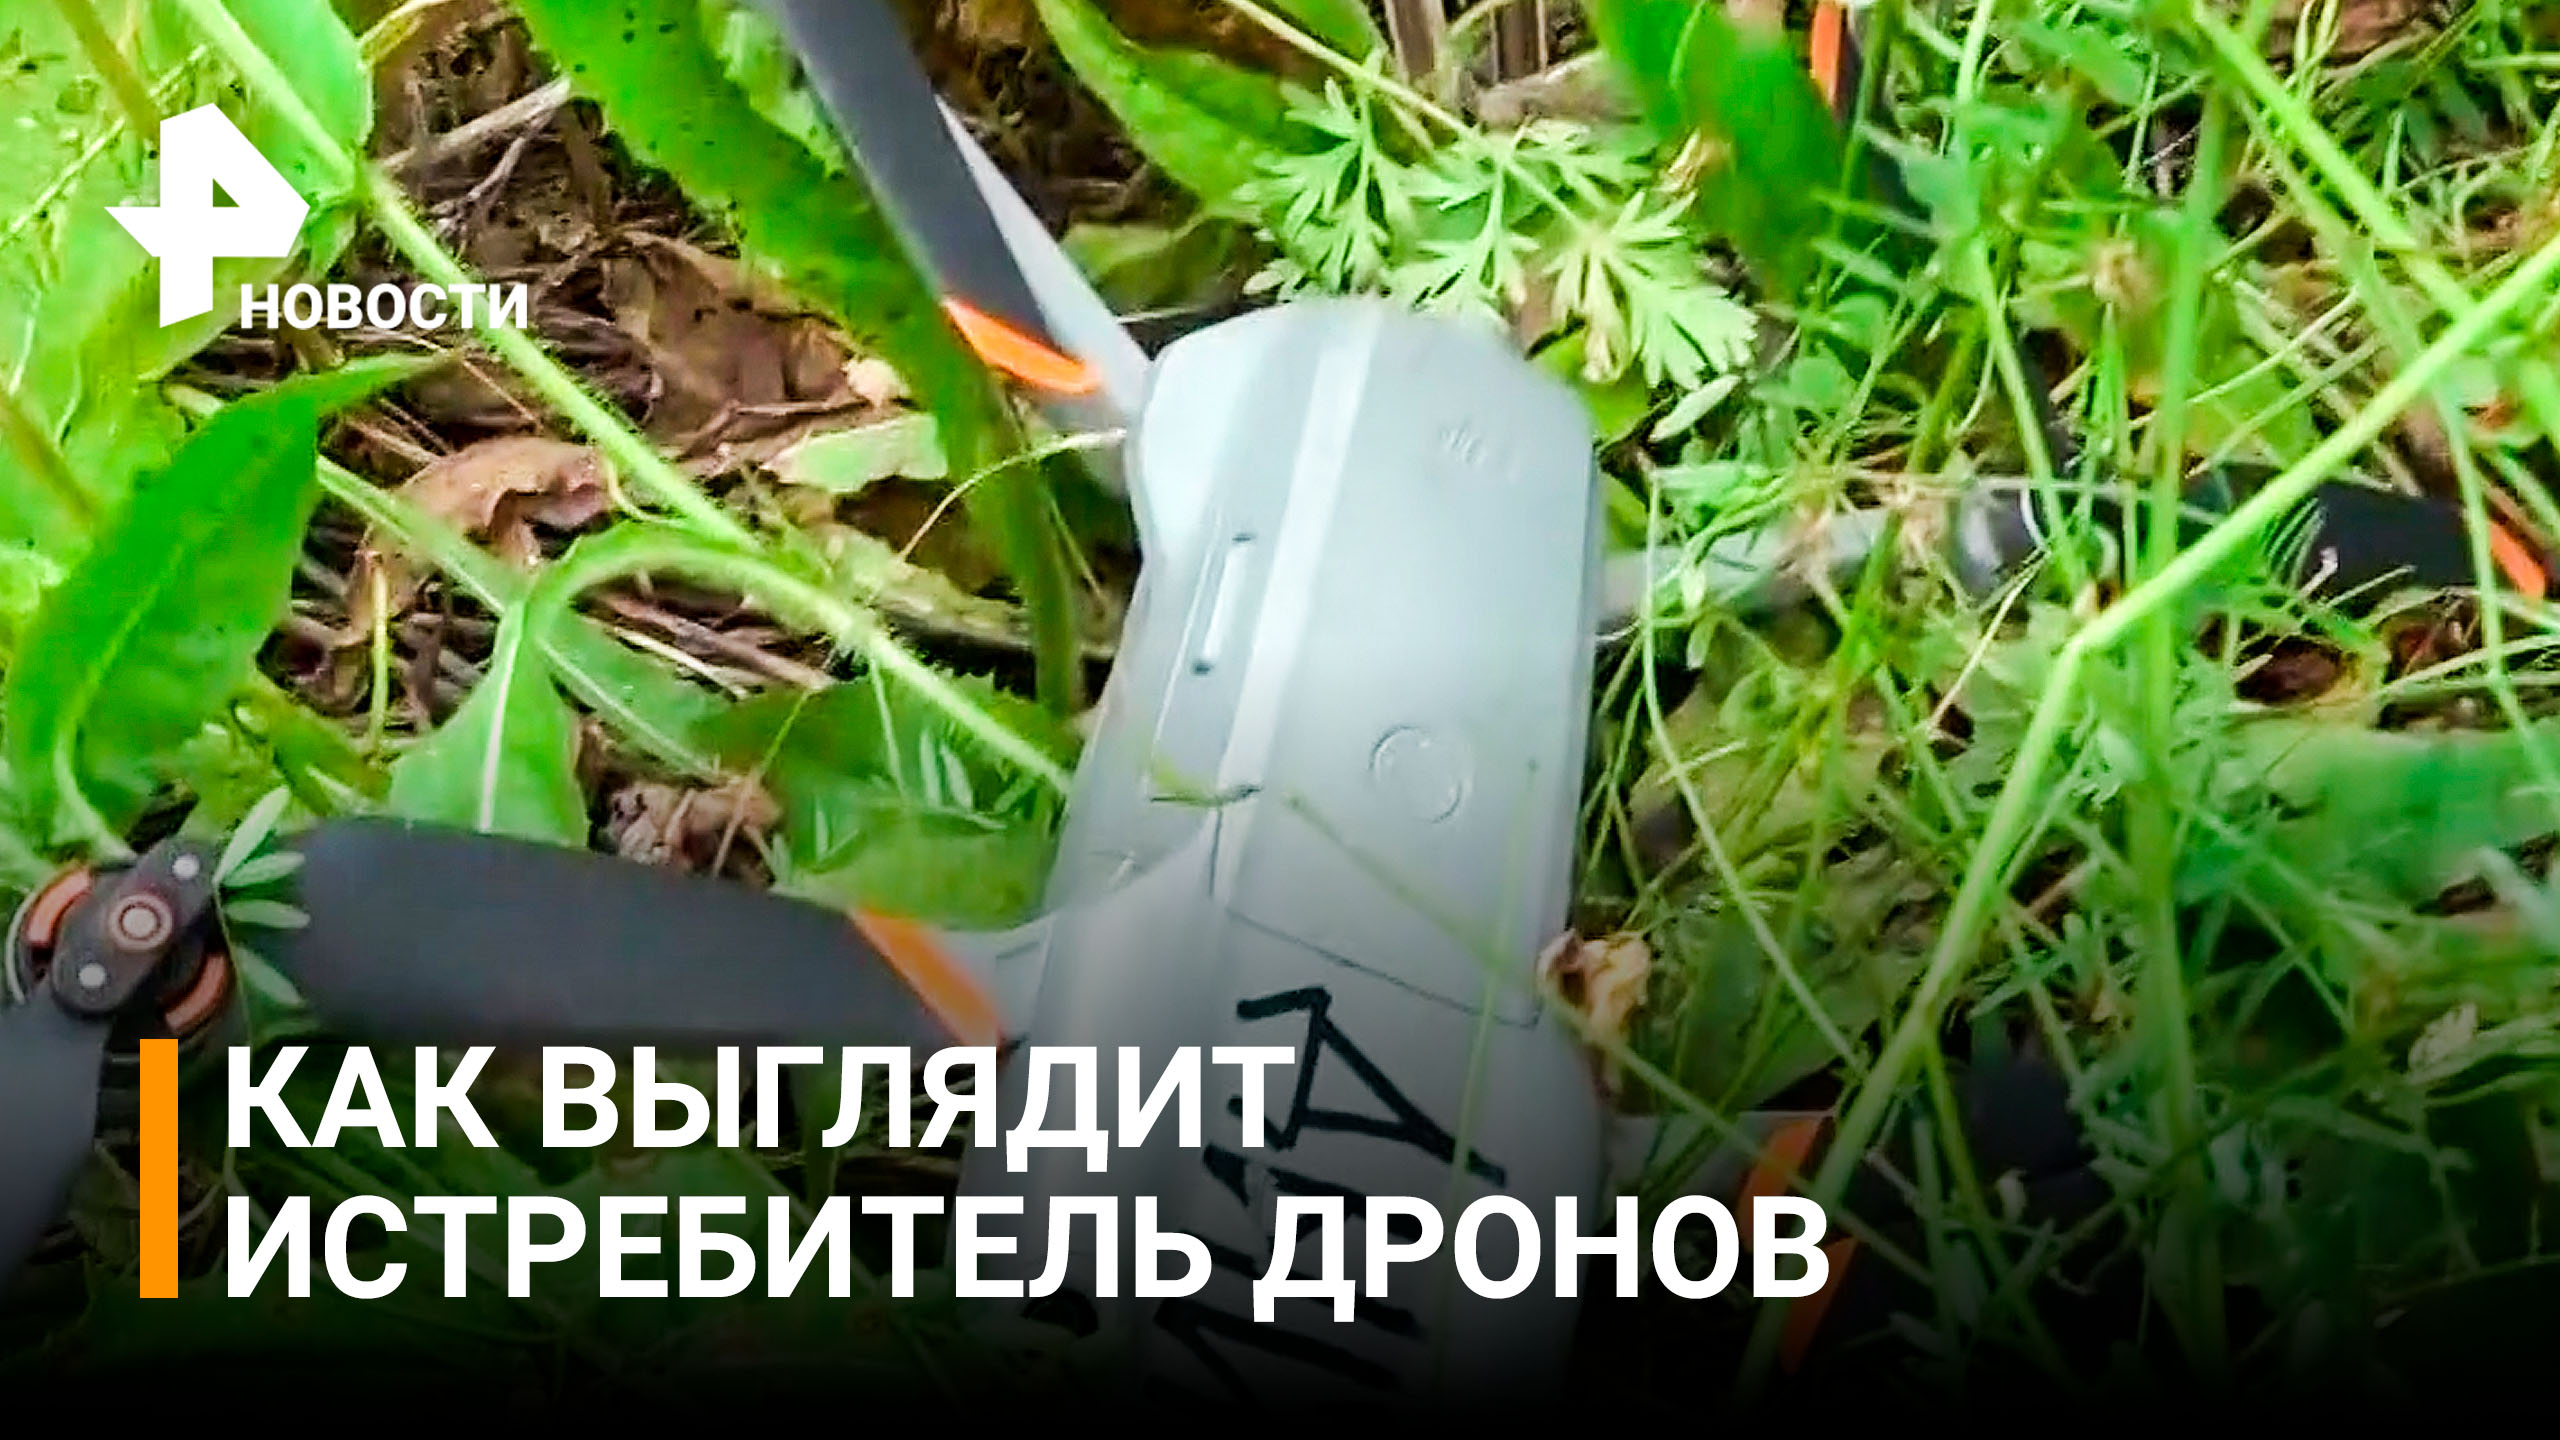 Охота на квадракоптеры в ДНР: кадры испытаний новейшей разработки истребителей дронов / РЕН Новости